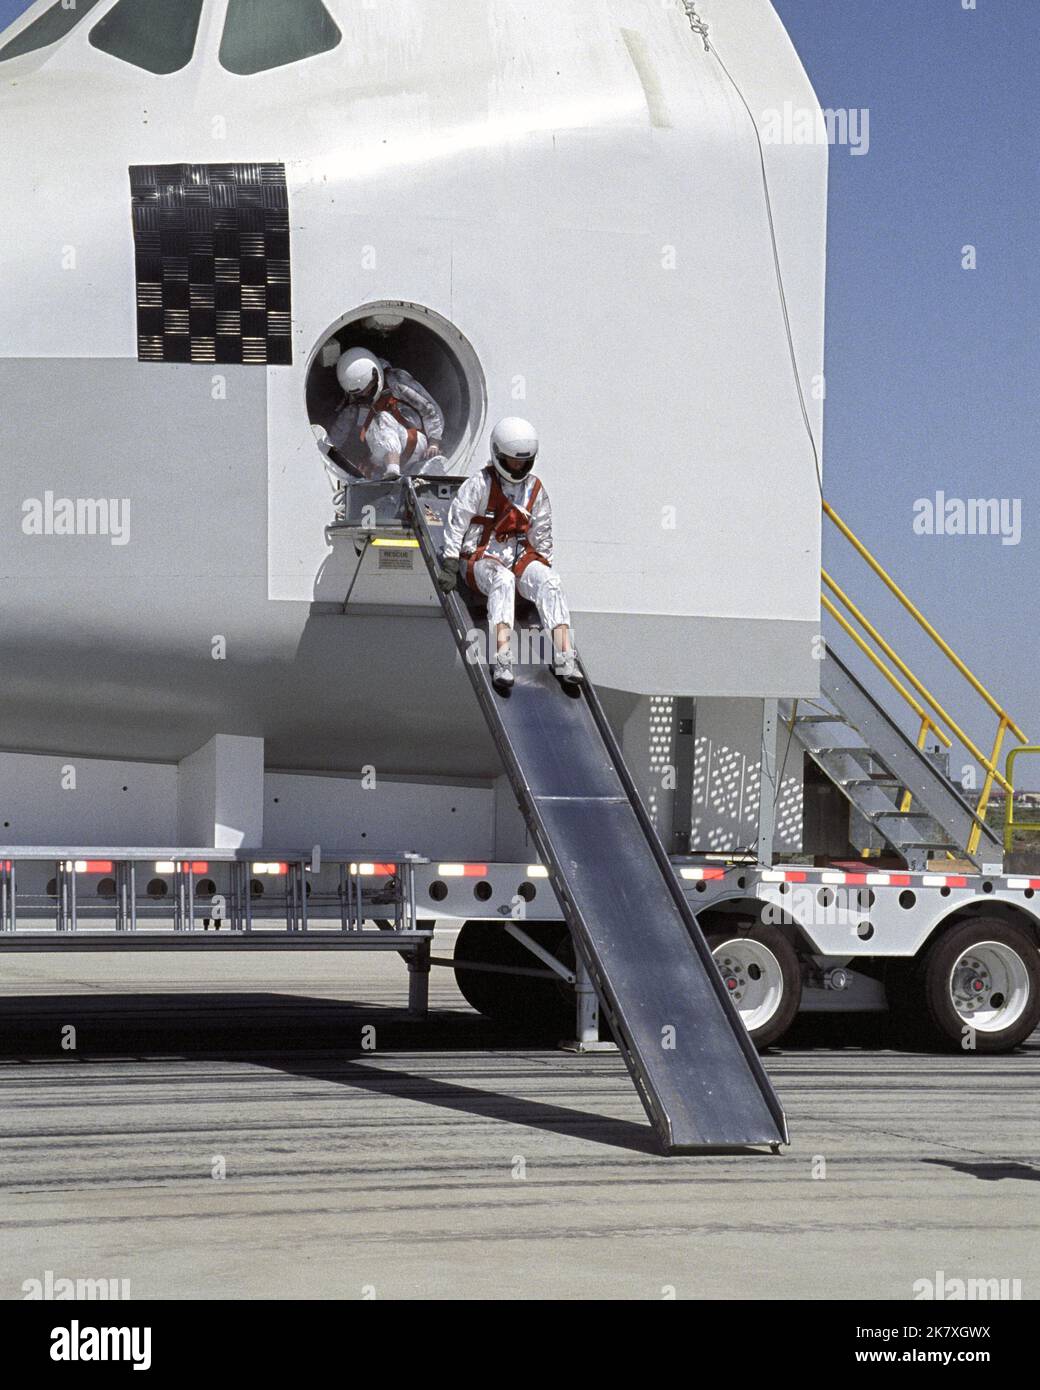 Ein freiwilliger „Astronaut“ startet während einer Rettungs- und Genesungsübung eine Ausstiegsrutsche von einem Space Shuttle-Crew-Kompartiment herunter. Während Feuerwehrleute Evakuierungsmüllchen vorbereiten, bereiten sich zwei „Astronauten“ vor, während sie während einer Rettungsübung eine Ausstiegsrutsche aus einem Shuttle-Mockup verwenden. Stockfoto